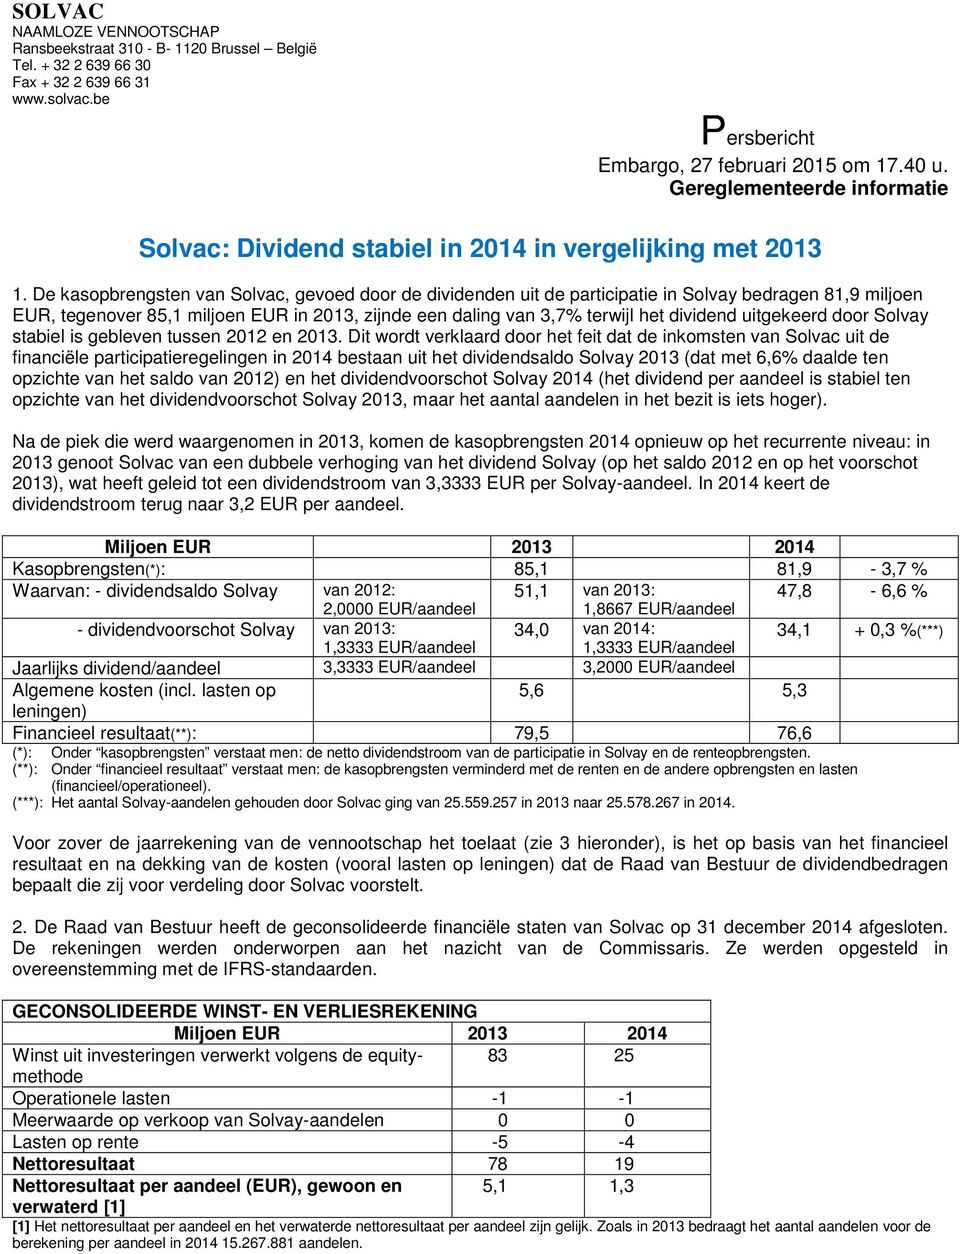 De kasopbrengsten van Solvac, gevoed door de dividenden uit de participatie in Solvay bedragen 81,9 miljoen EUR, tegenover 85,1 miljoen EUR in 2013, zijnde een daling van 3,7% terwijl het dividend